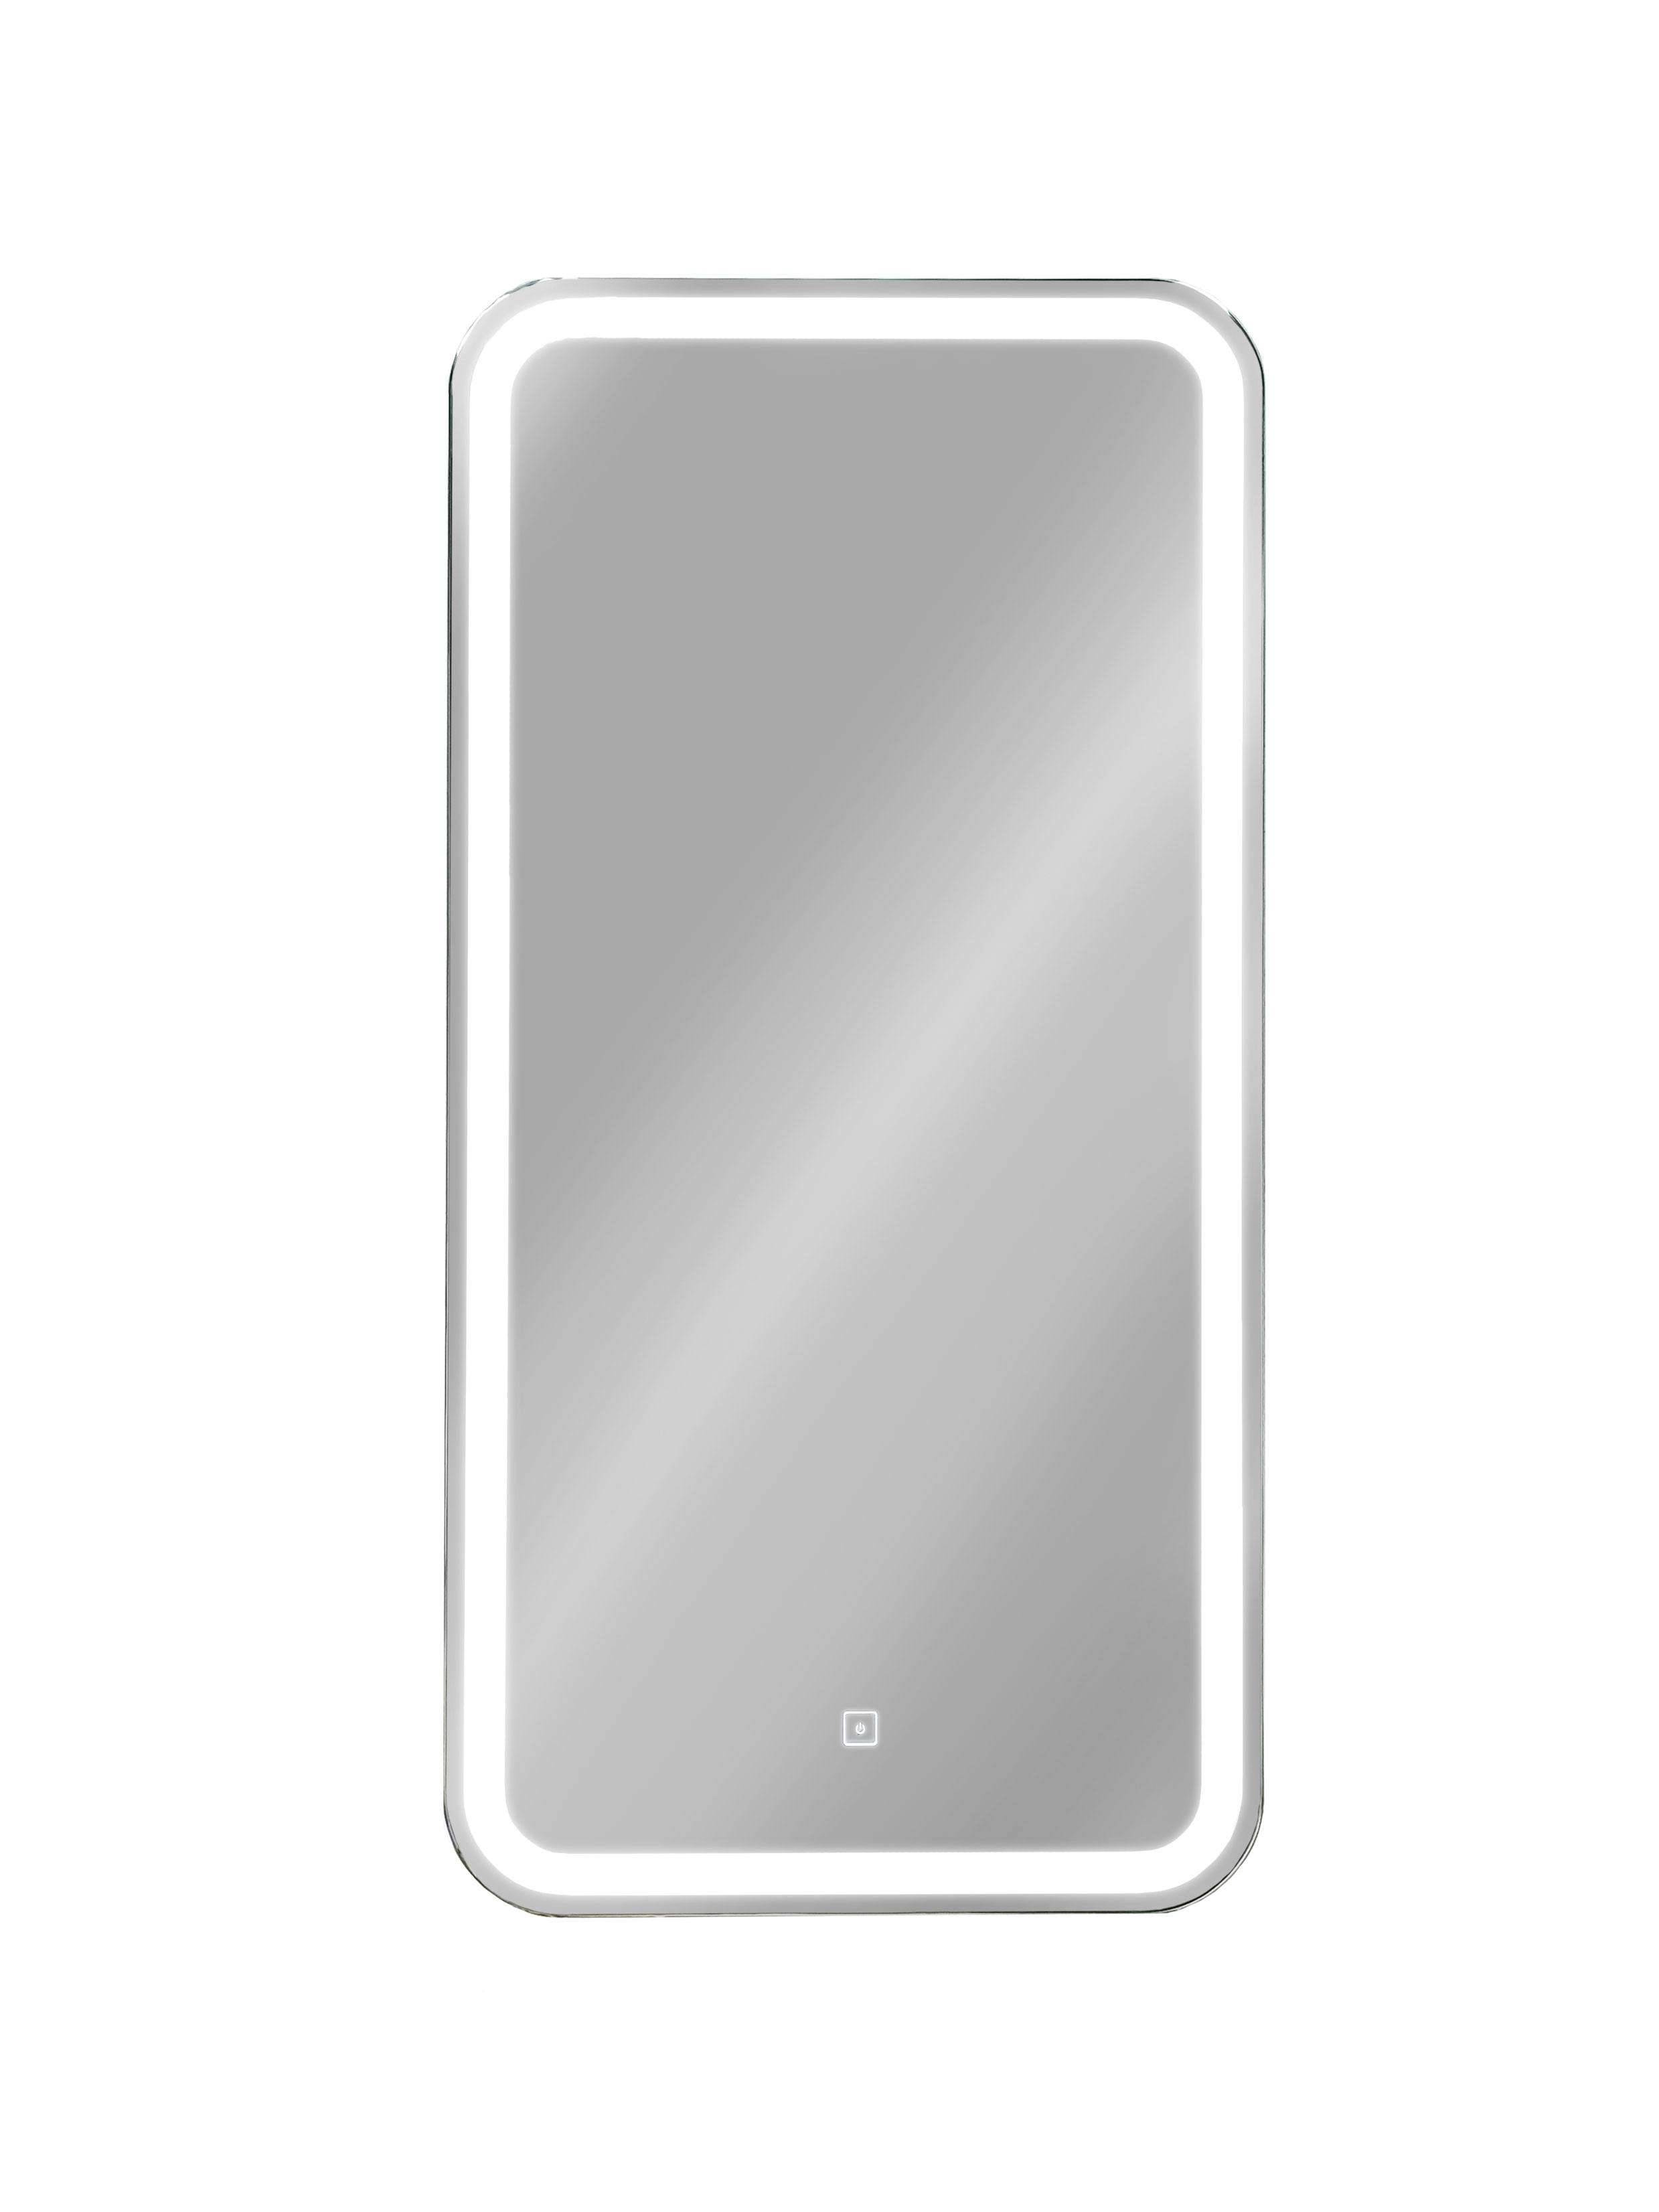 Зеркальный-шкаф с подсветкой Taliente CBled 40 см TA-CBled-EL4080R подвесной, белый зеркальный шкаф sanflor